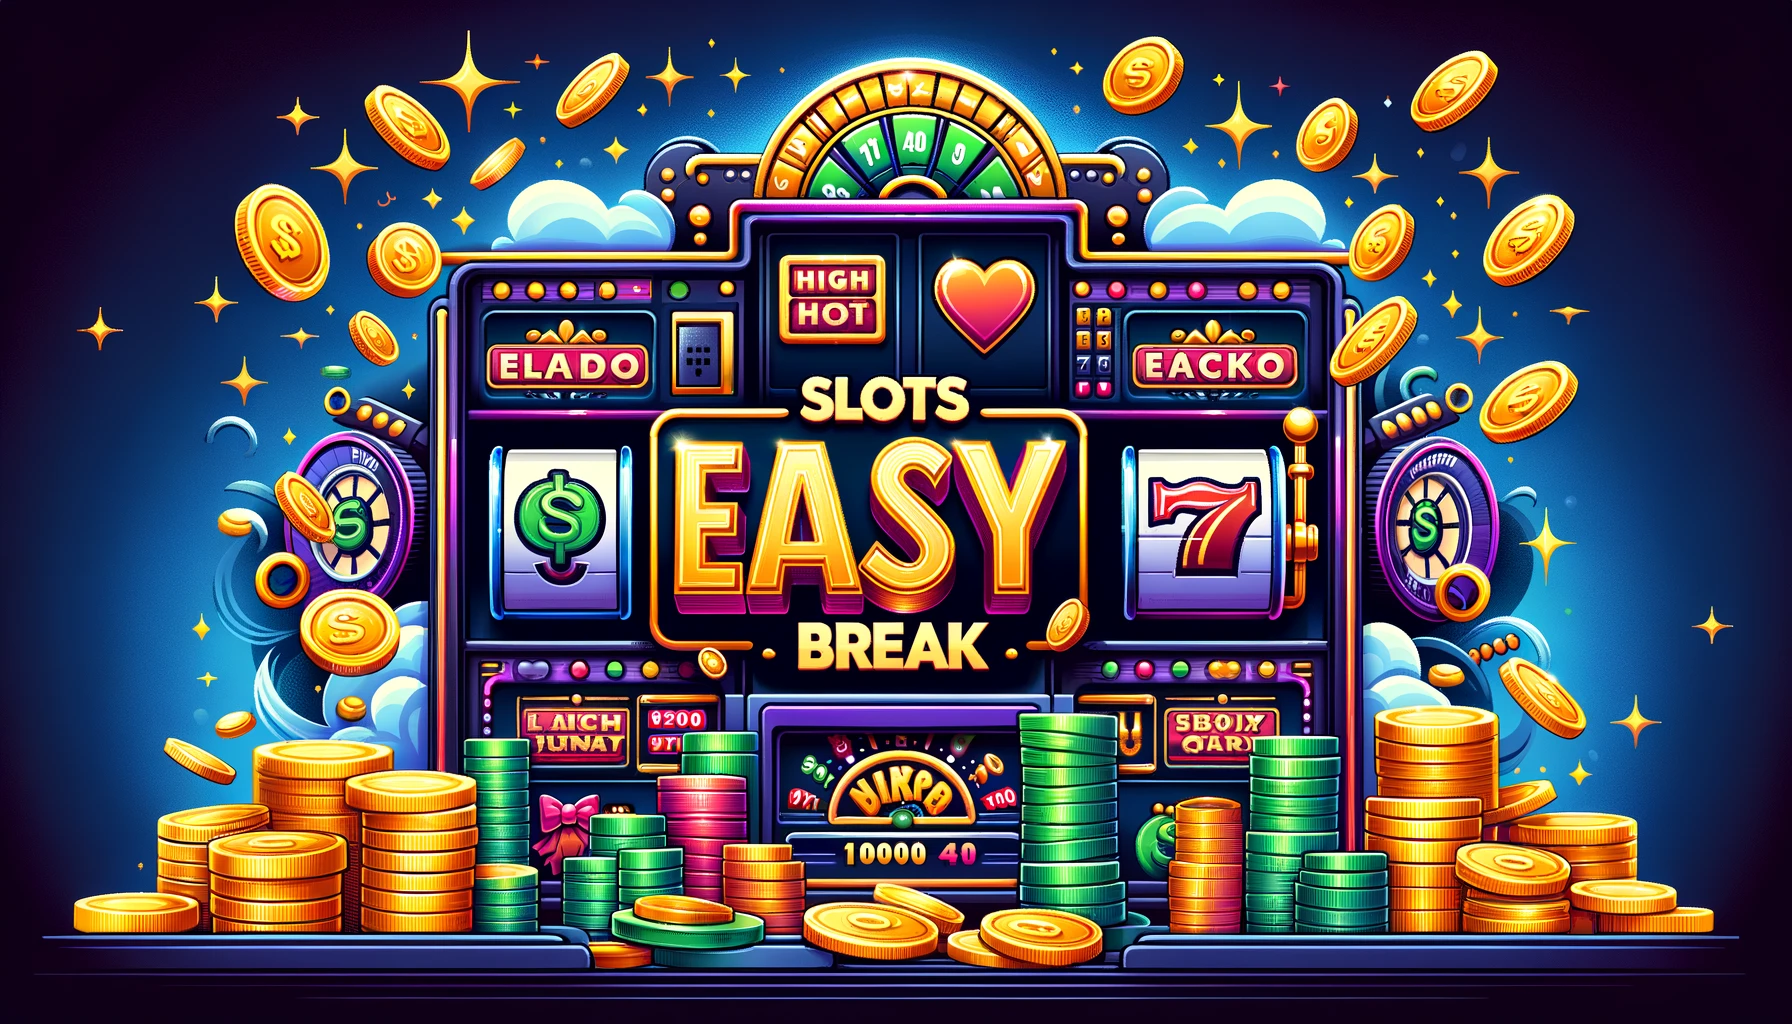 Slots easy break